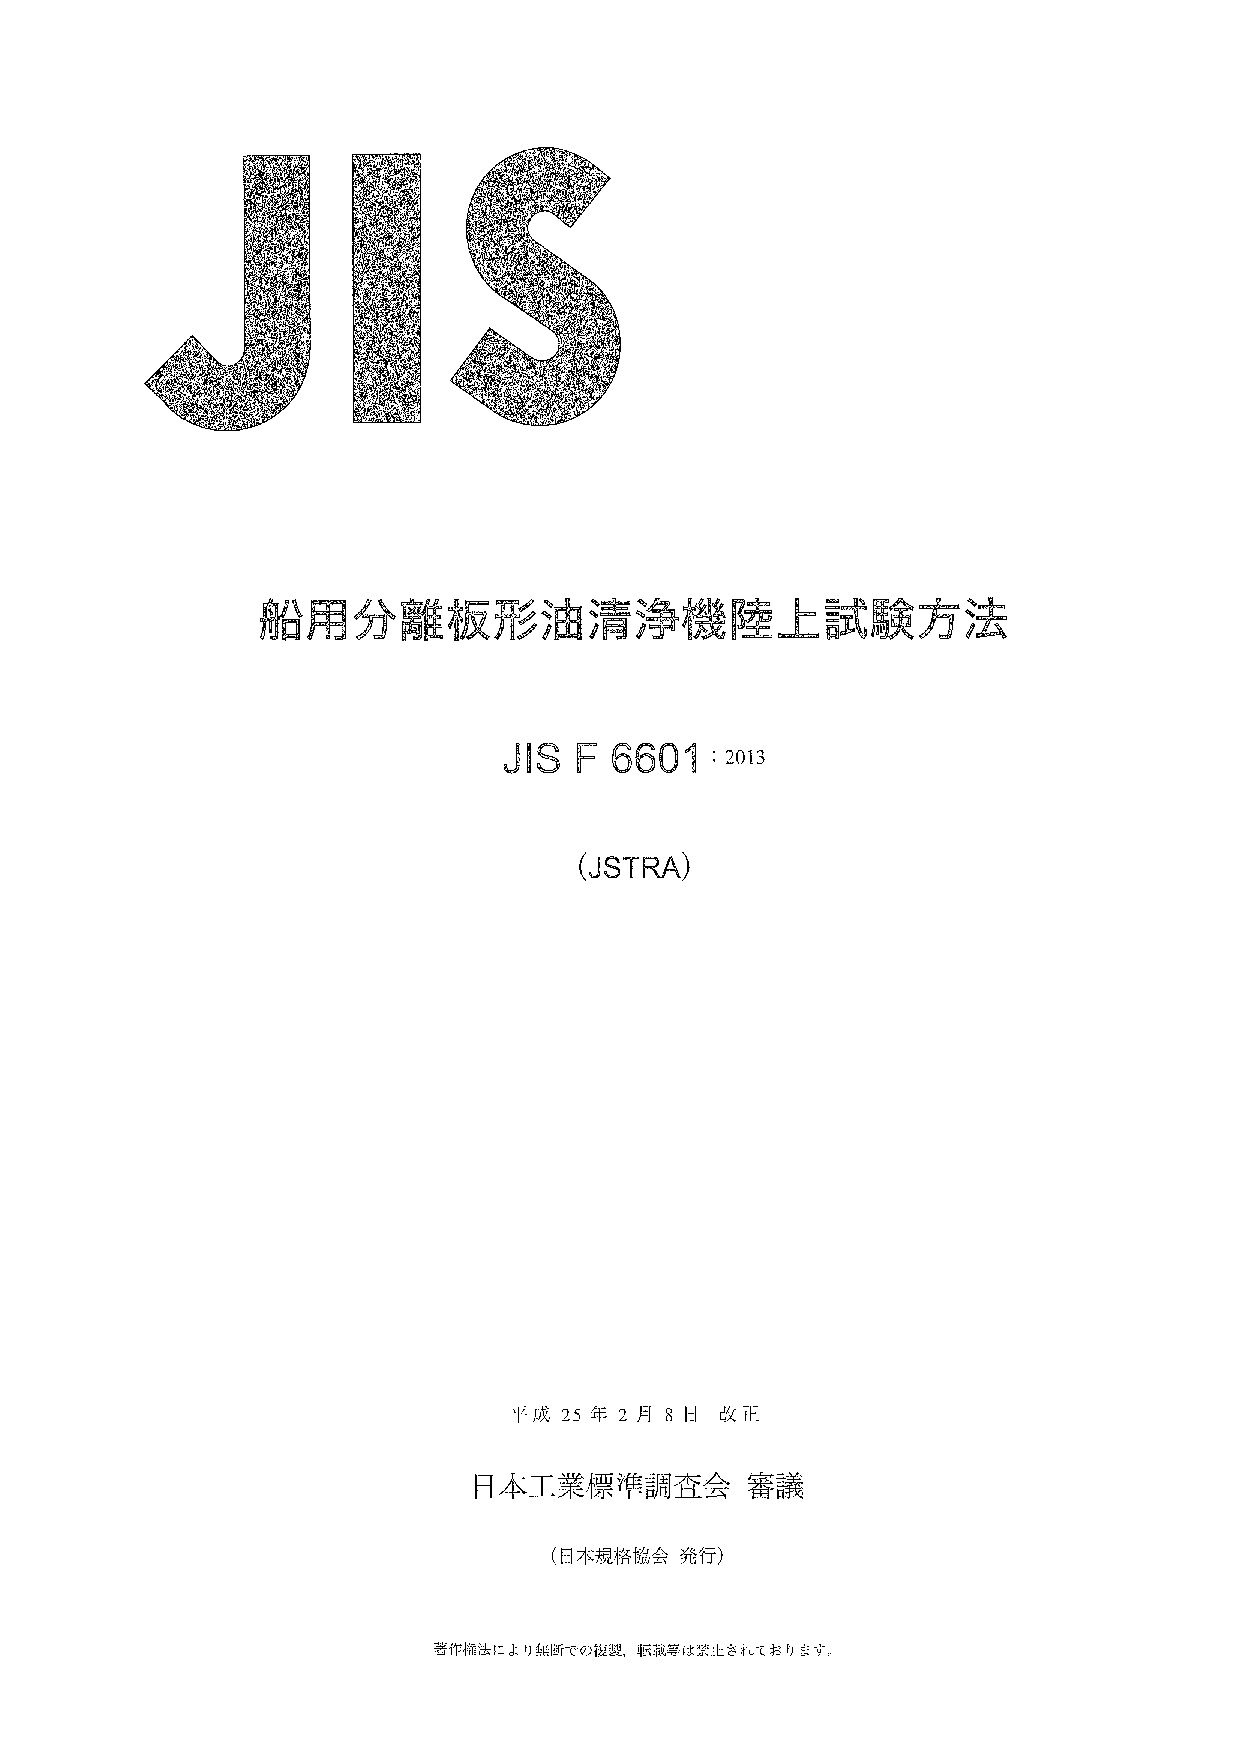 JIS F 6601:2013封面图